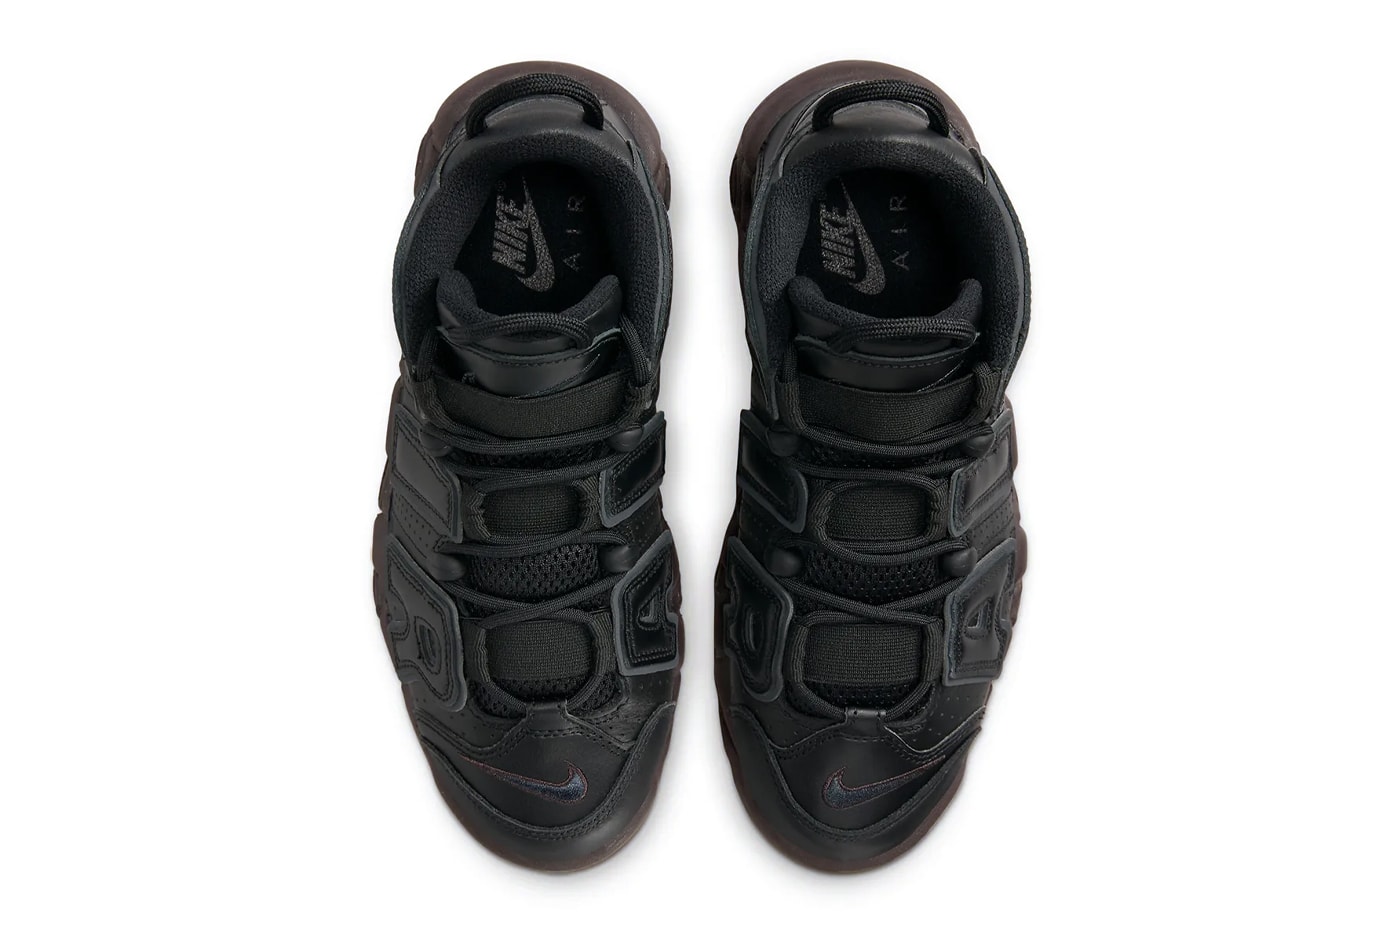 ナイキから重厚感のあるレザーを纏ったエアモアアップテンポの新色が登場 Nike Air More Uptempo Arrives in a Muddy Sole black brown leather DV1137-001 swoosh retro basketball shoe 